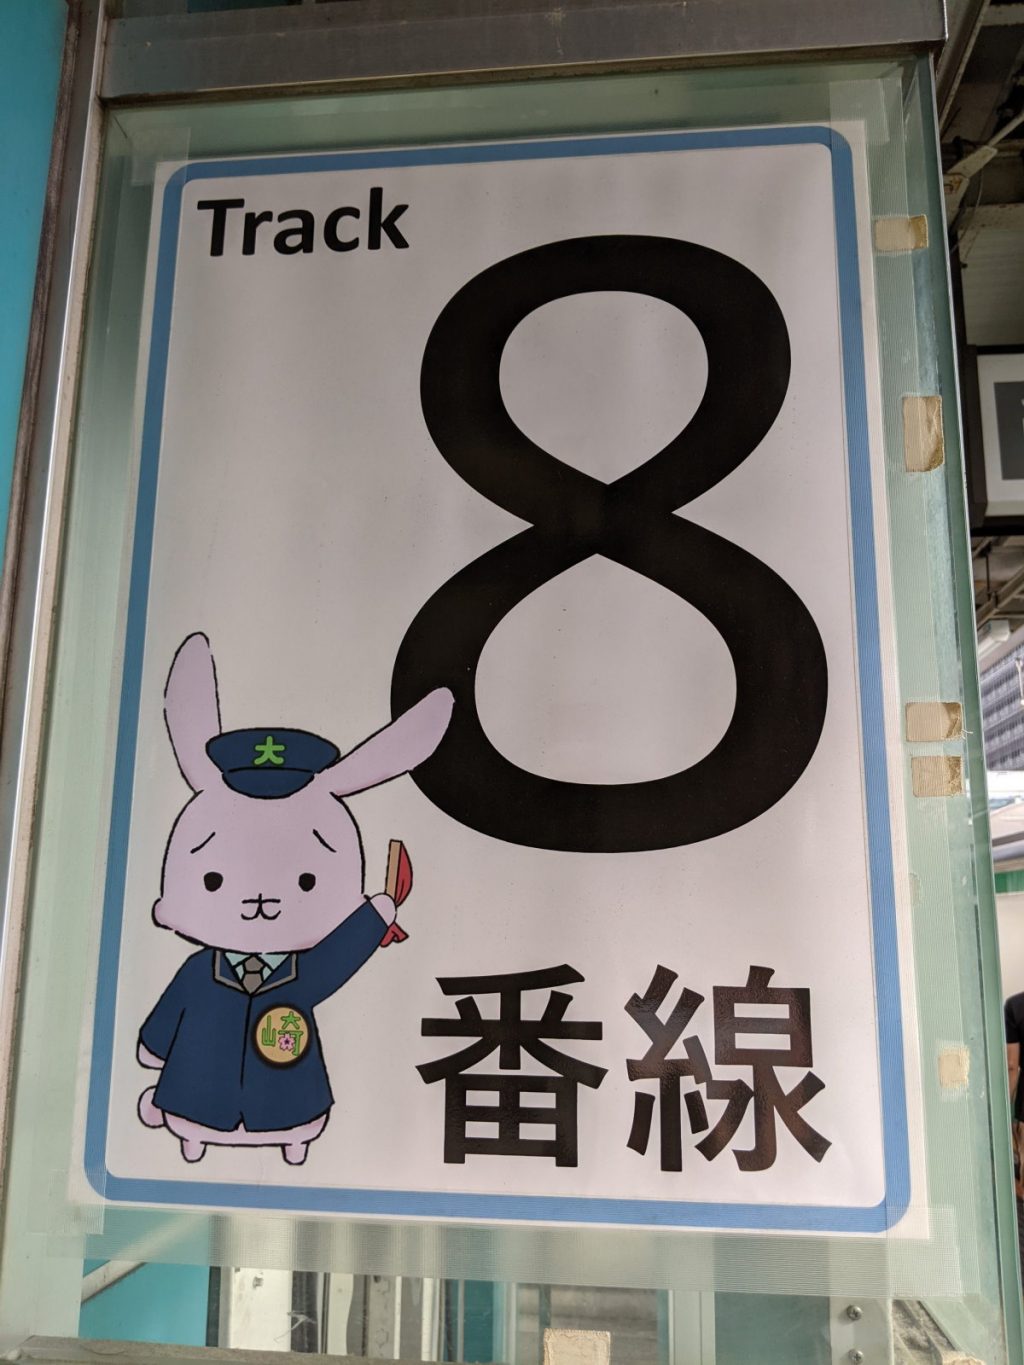 大崎駅のキャラクター「おうさぎ」